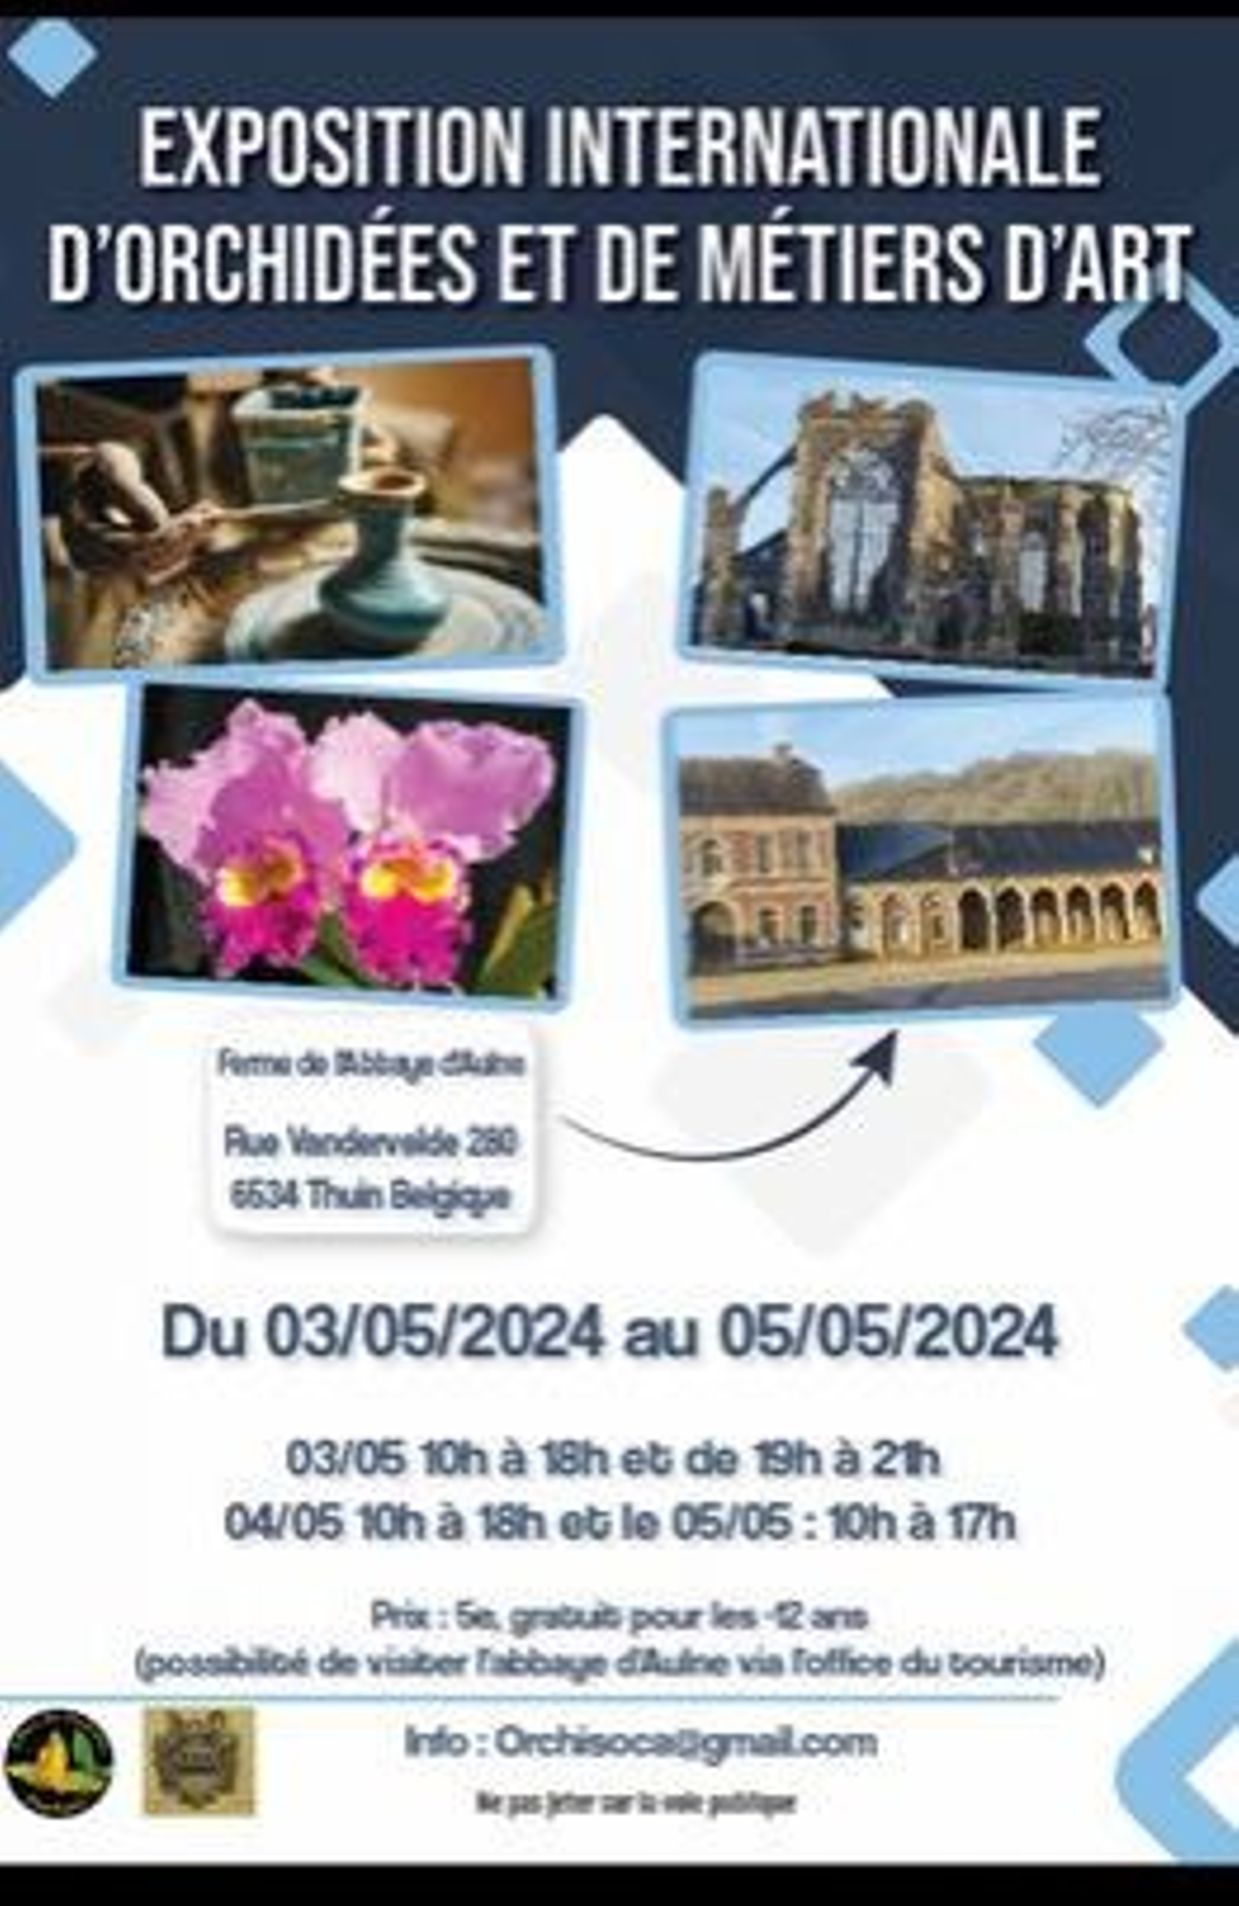 Expo d'orchidées et des métiers d'art à Thuin du 03 au 05 mai 2024